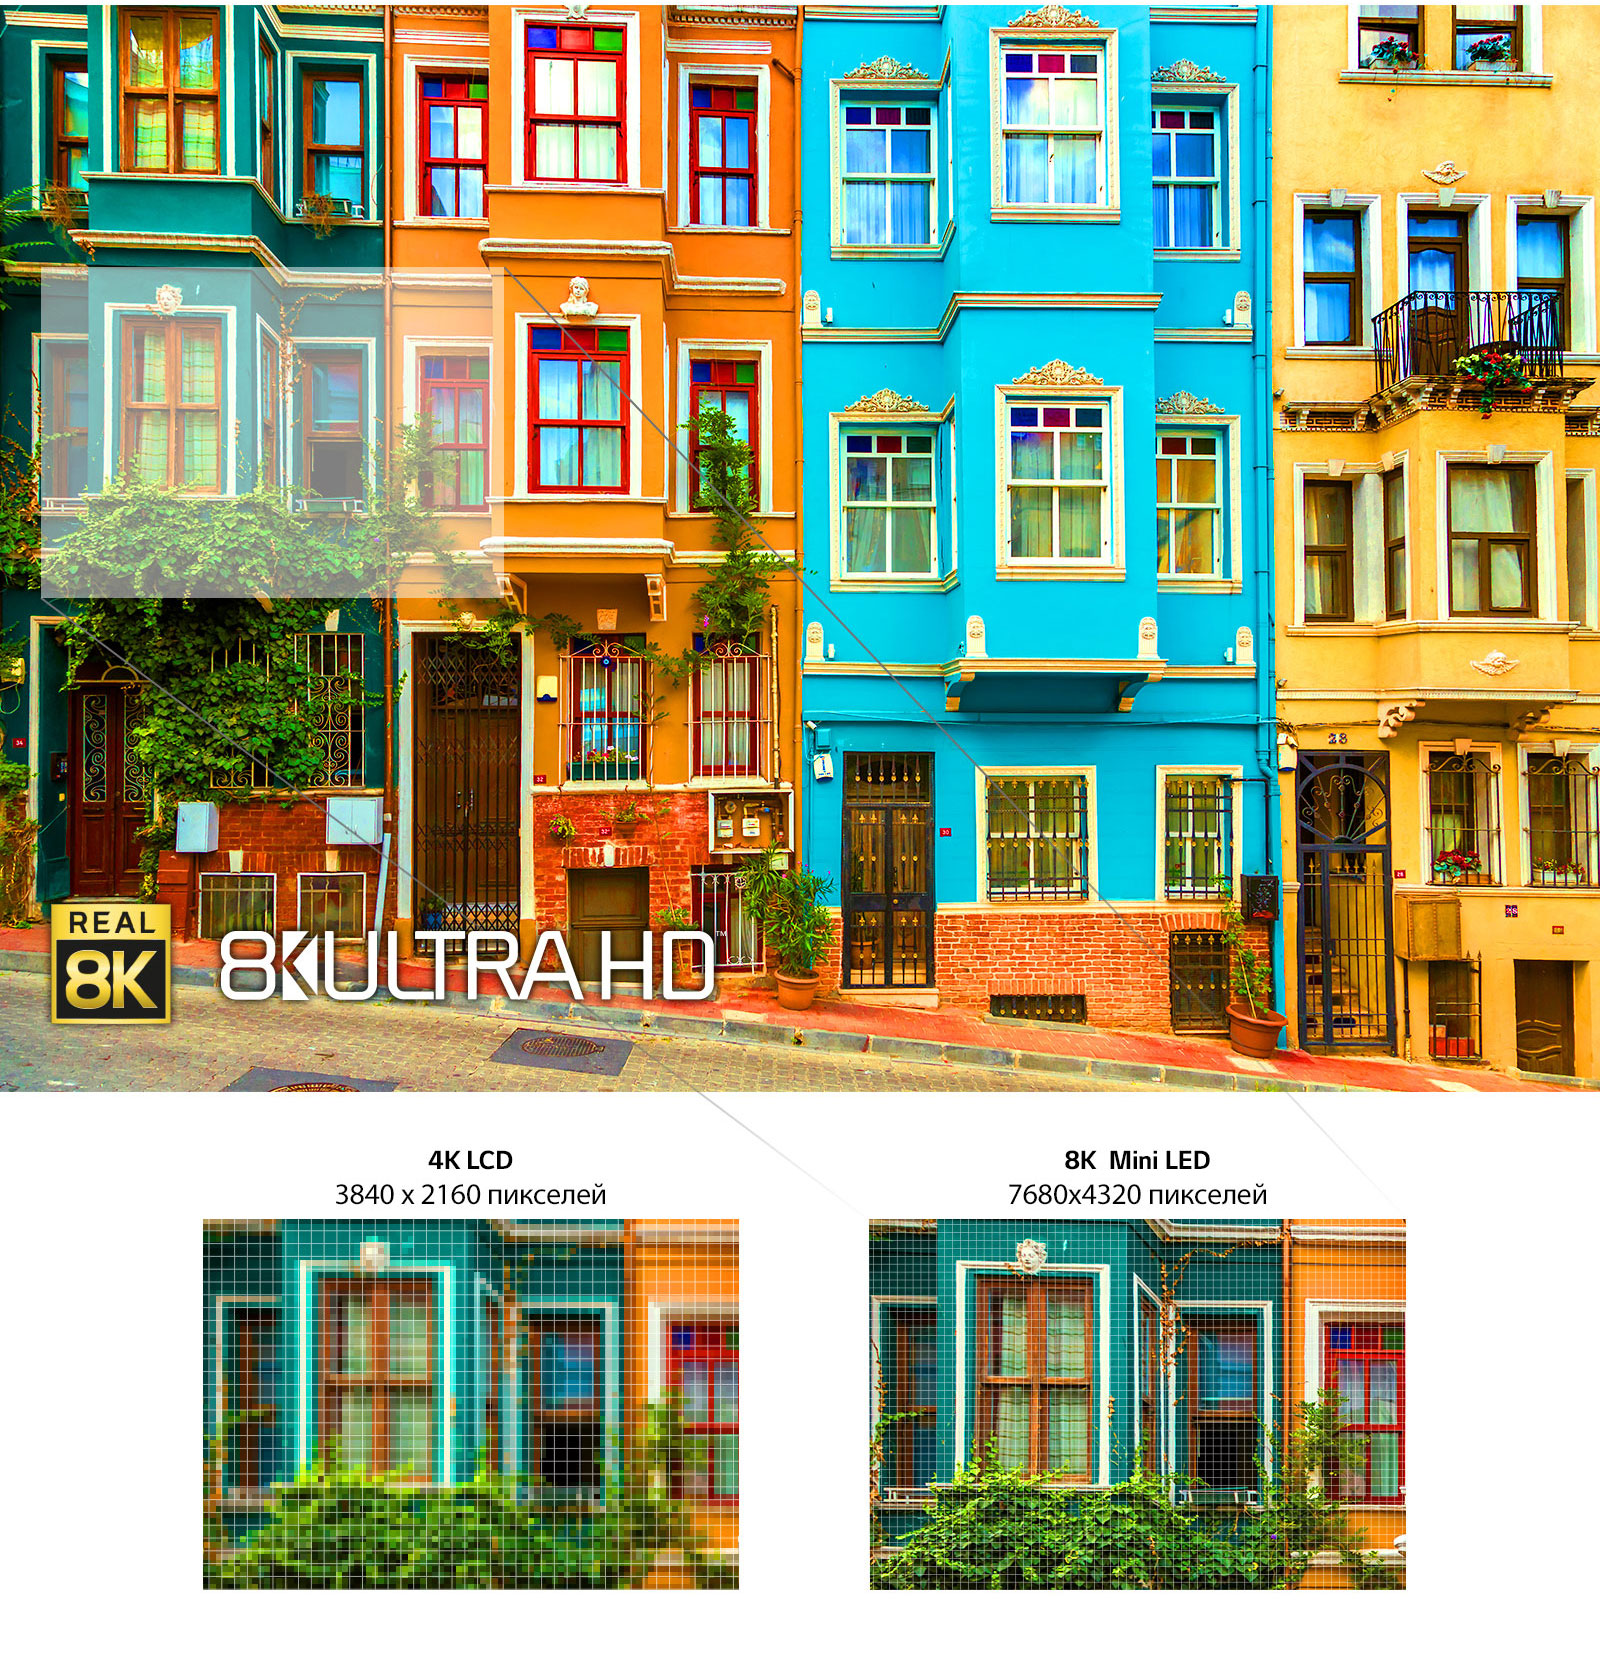 Изображения ряда ярких многоэтажных домов. Ниже показано два уменьшенных изображения одного из окон, демонстрирующих разницу между 4K LCD и 8K Mini LED.